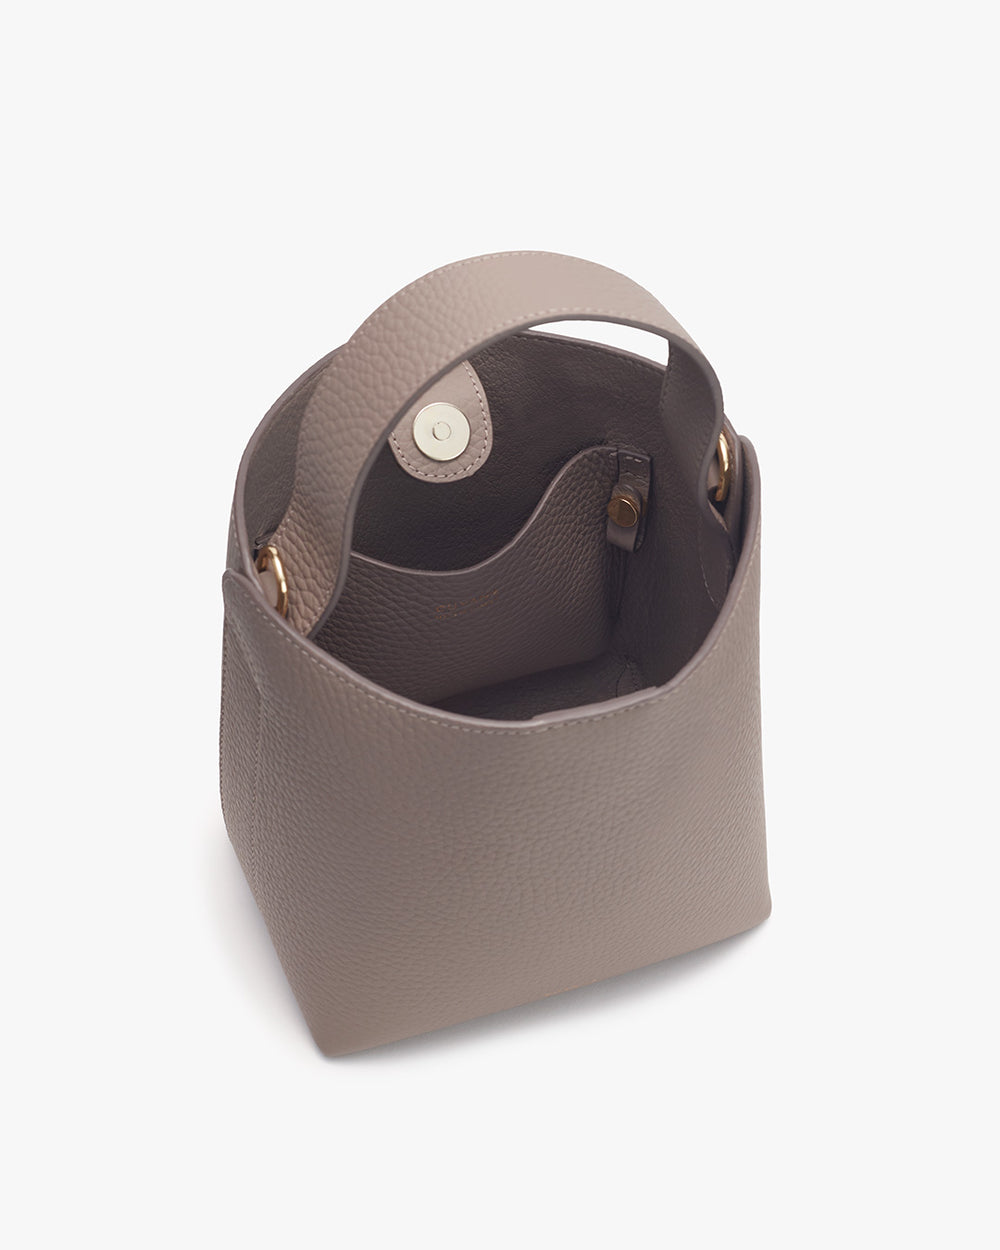 Open handbag with visible interior snap button closure